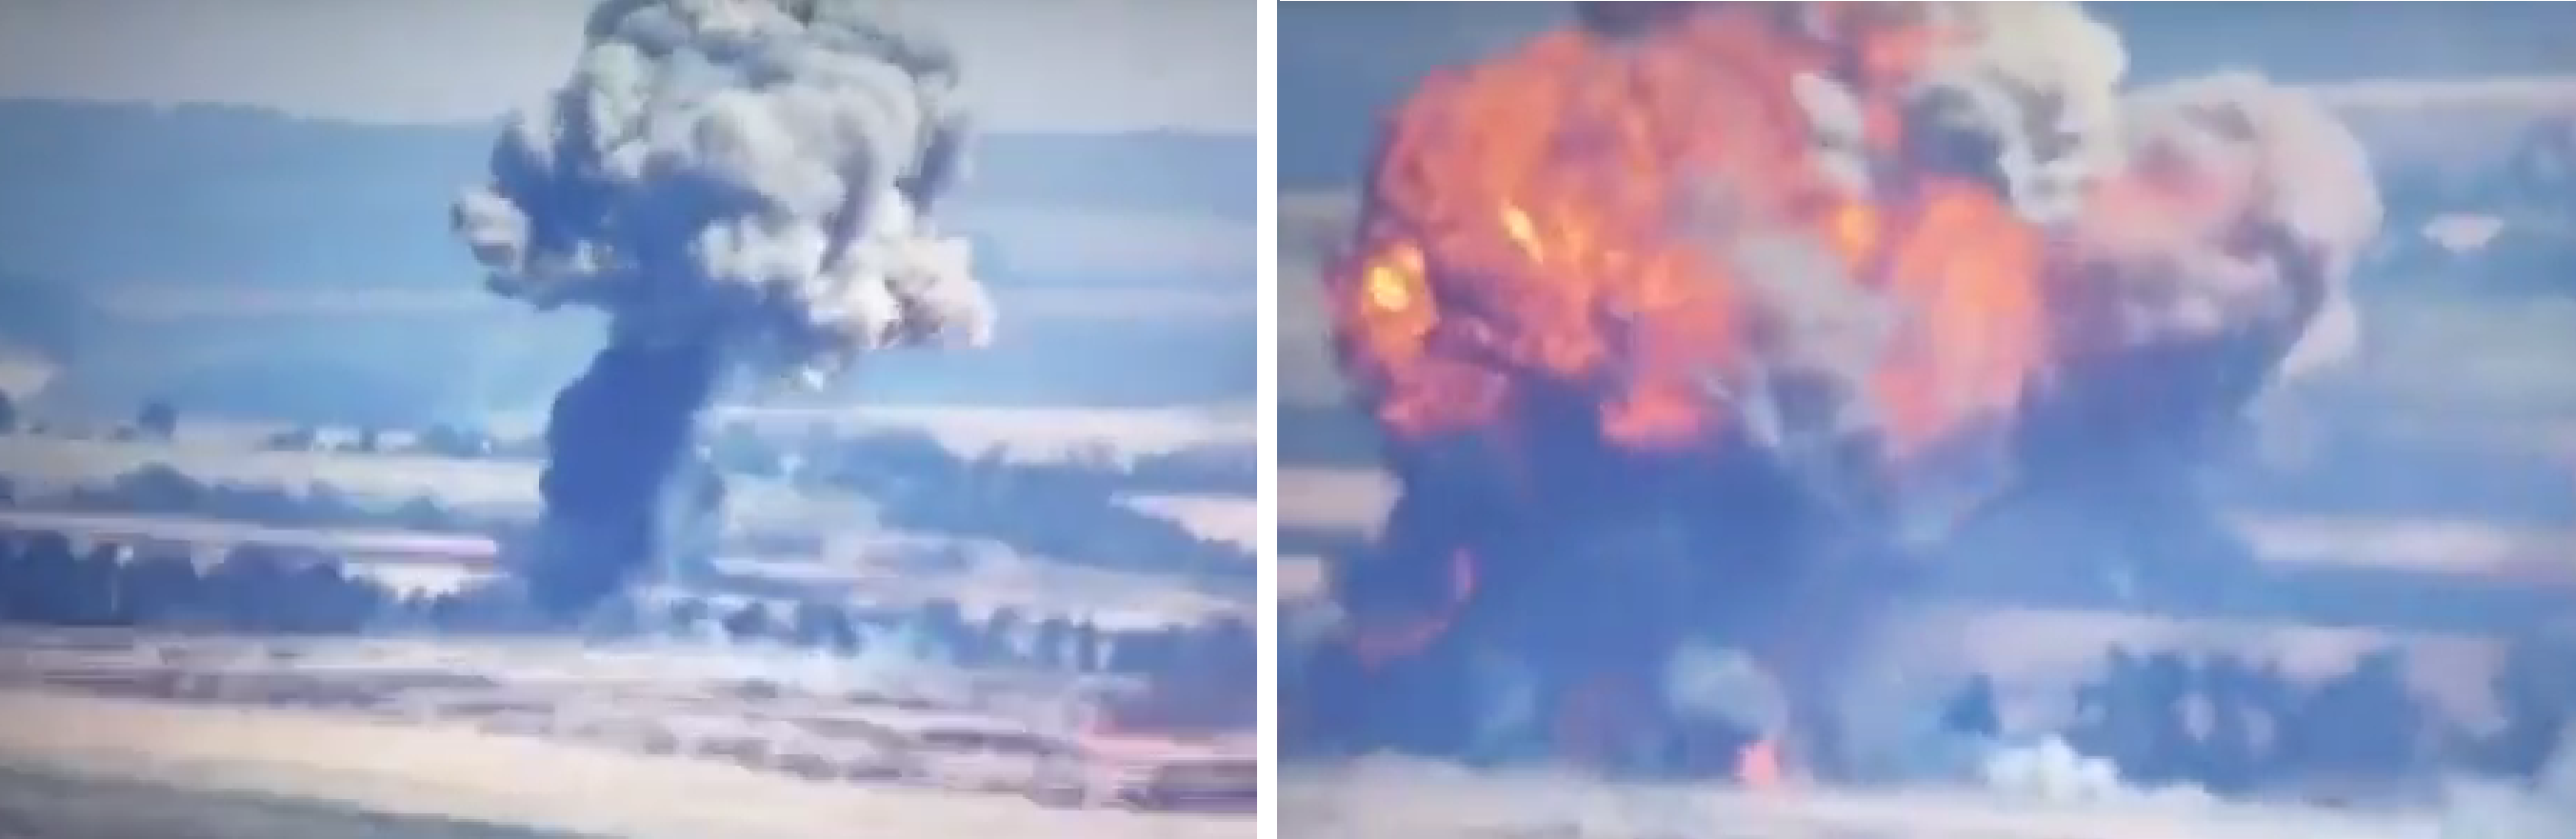 Ukazał się spektakularny film z destrukcji rosyjskiego czołgu, który „wyparował”